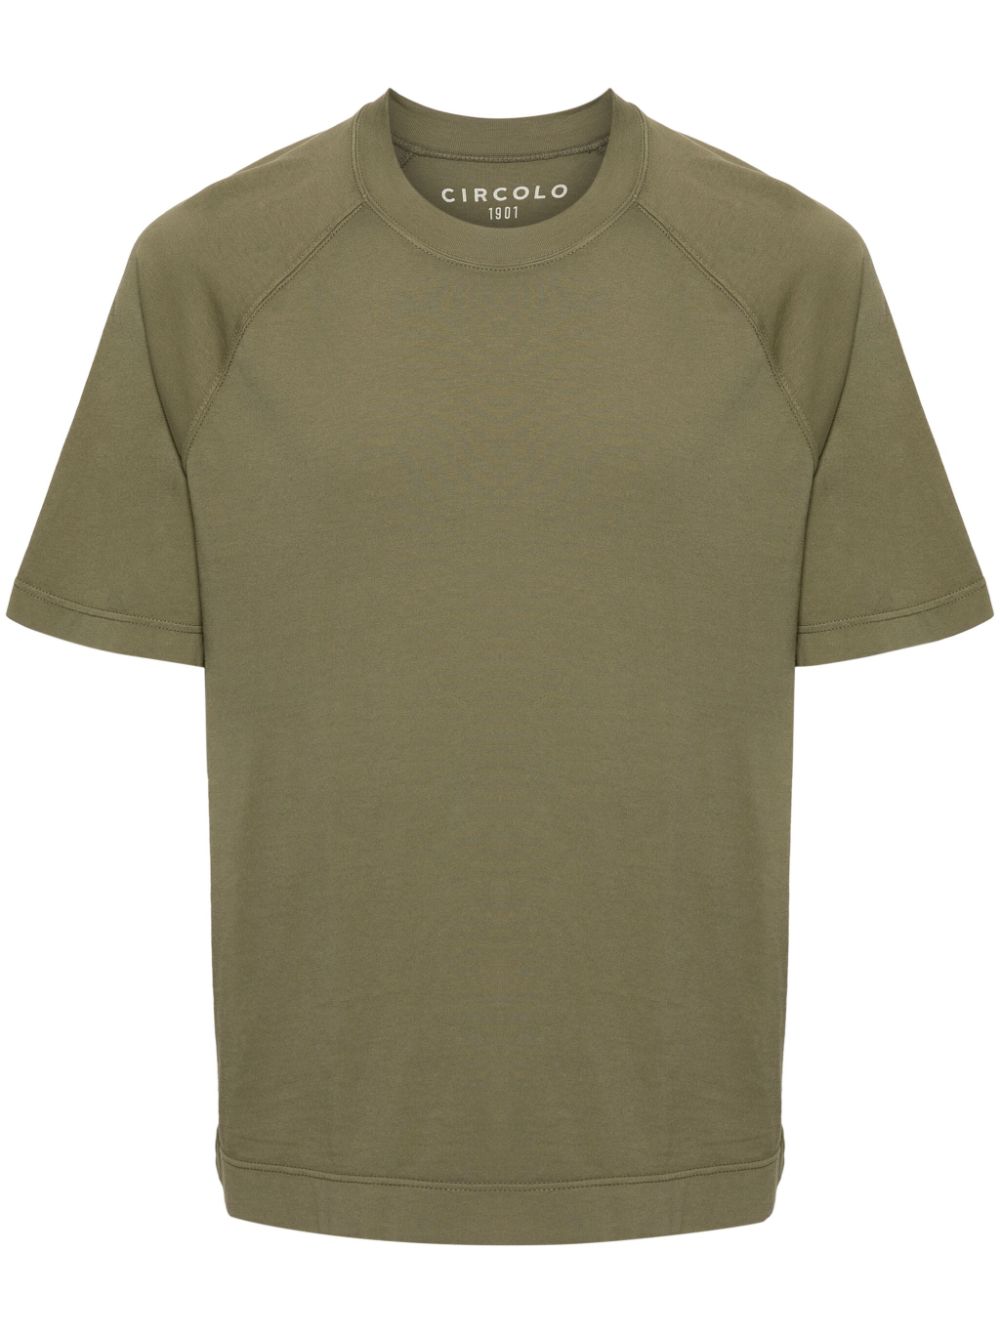 circolo 1901 t-shirt en coton à manches raglan - vert